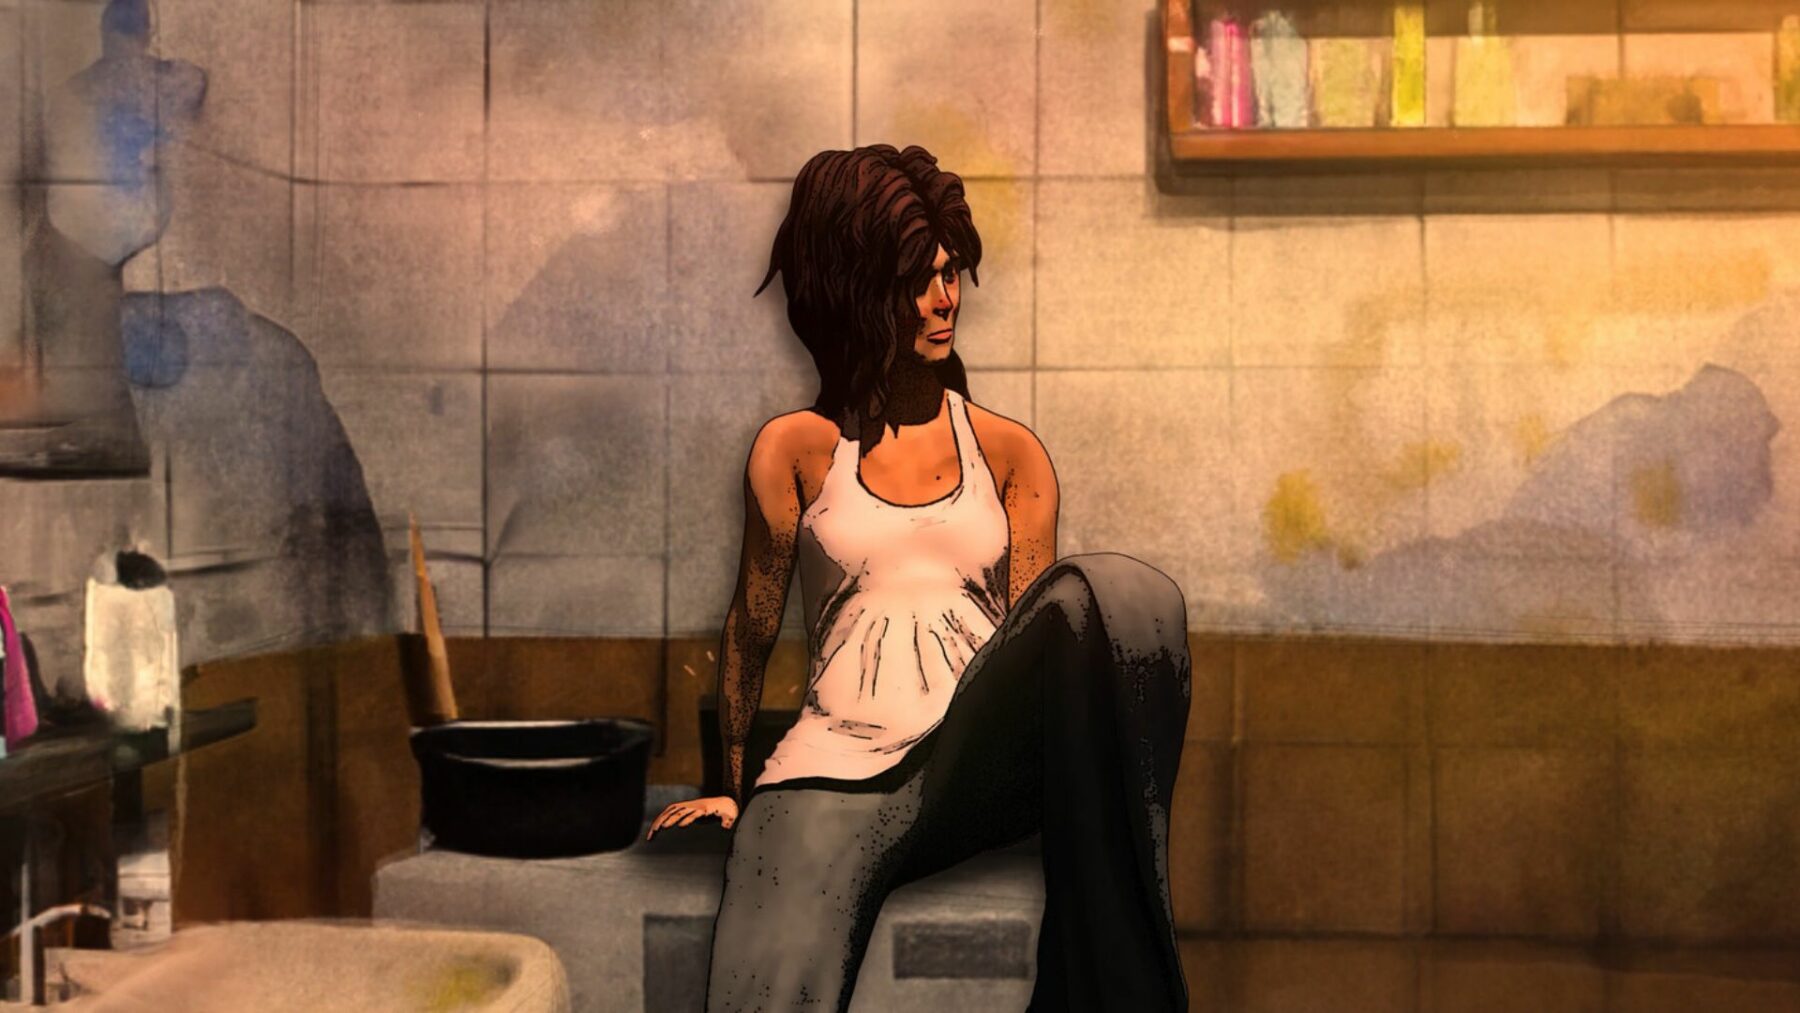 Kadr z polskiej animacji przedstawiający kobietę siedzącą samotnie w pokoju.